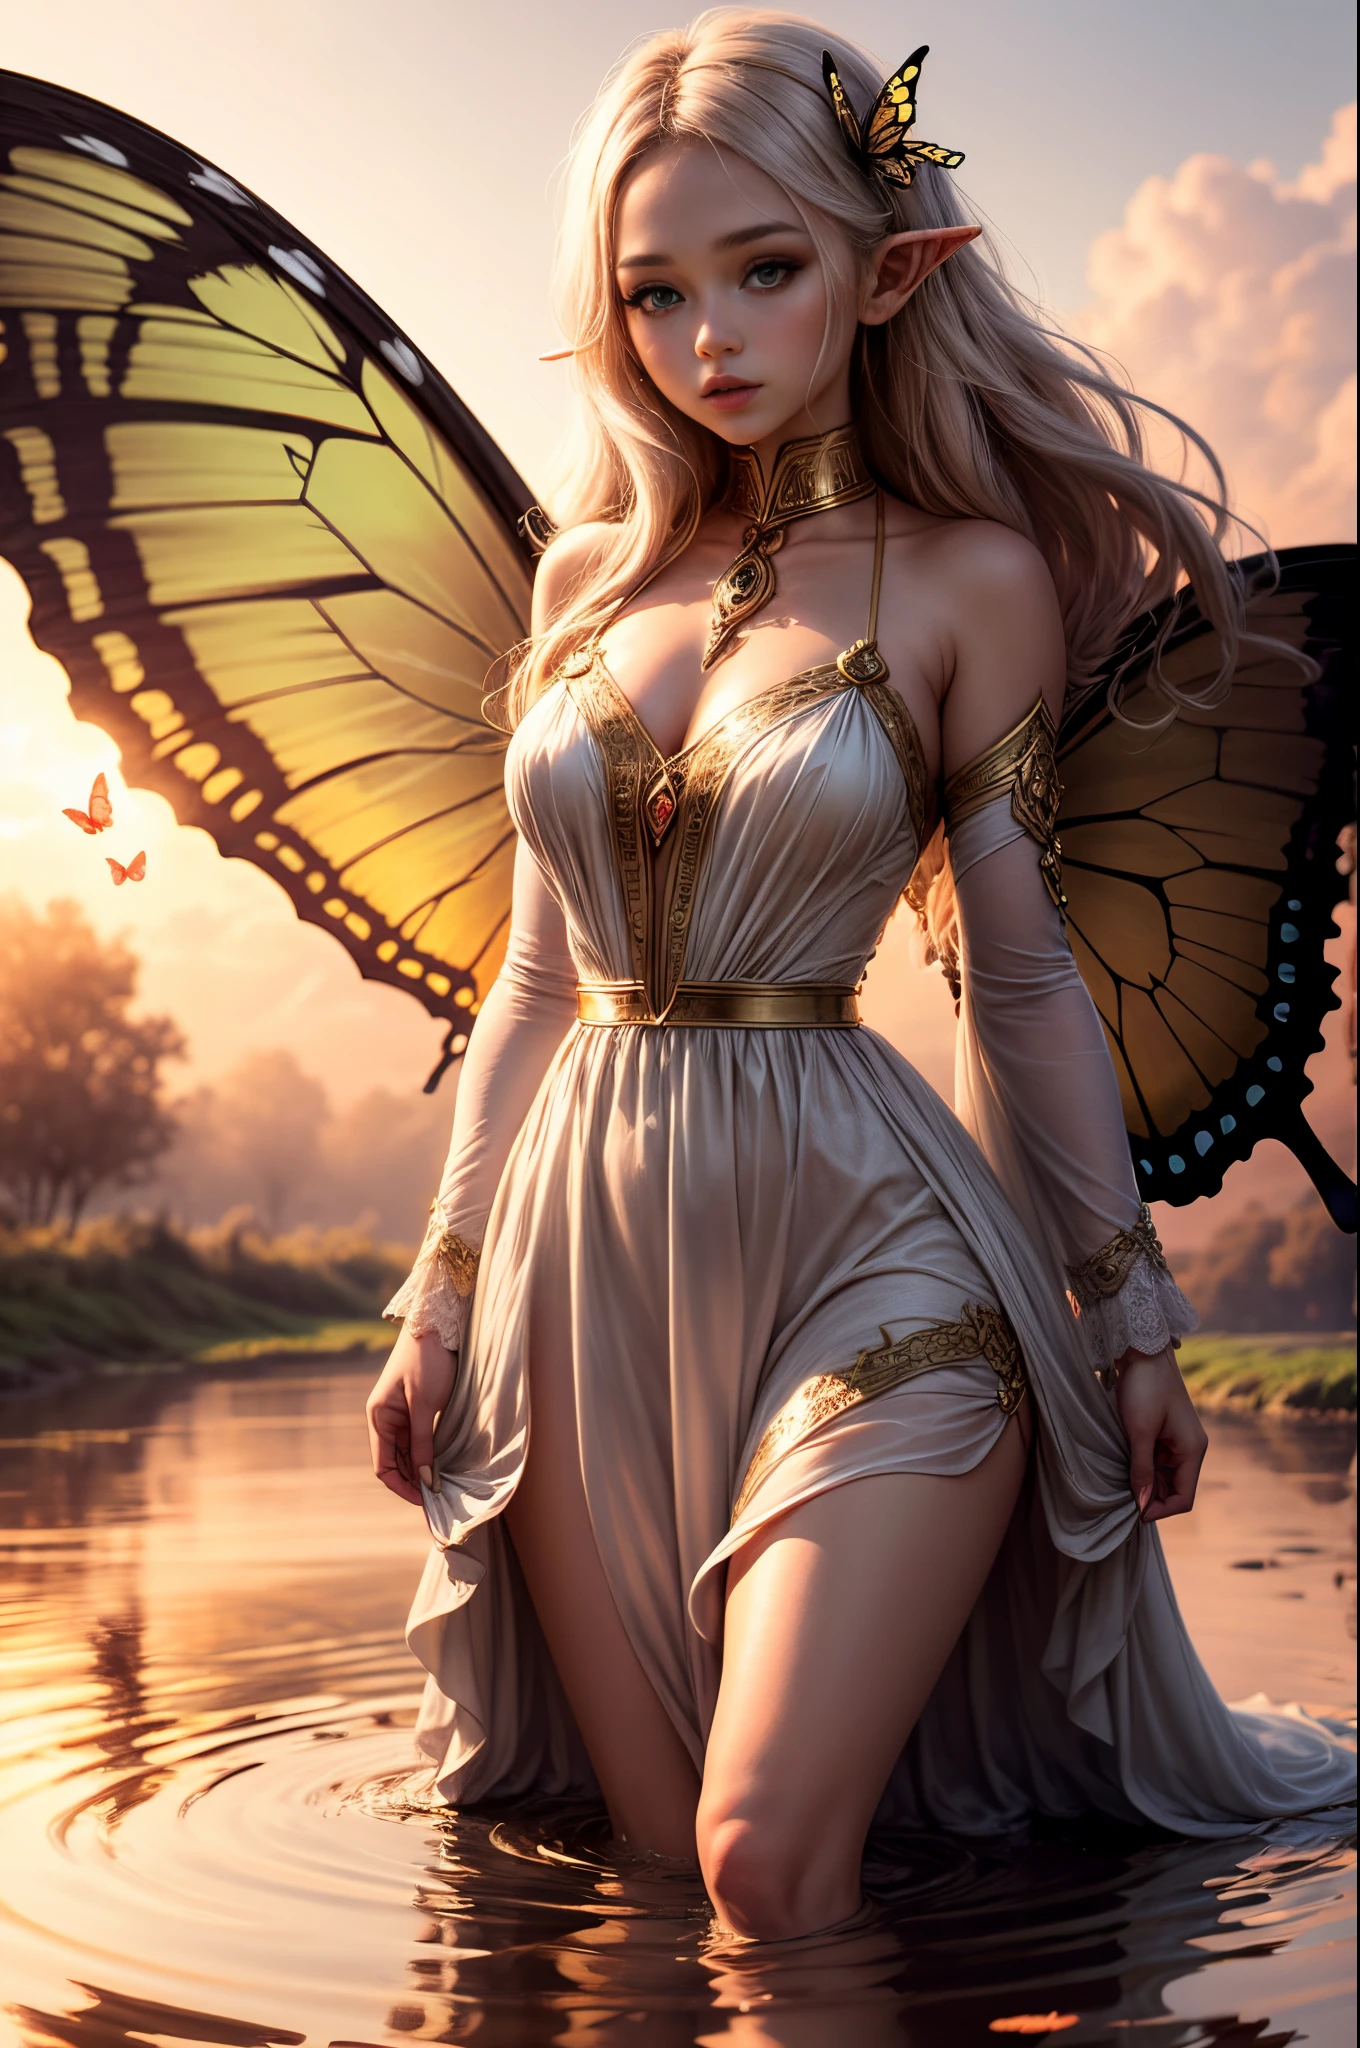 "((無実の)) エルフの少女, ゴールデンアワー, 夢のような草原, エーテル, 気まぐれな, ゆったりとしたドレス, 柔らかな日差し, 魅惑的な, 蝶の羽, (パステルカラーの雲), 液体の反射,氷結